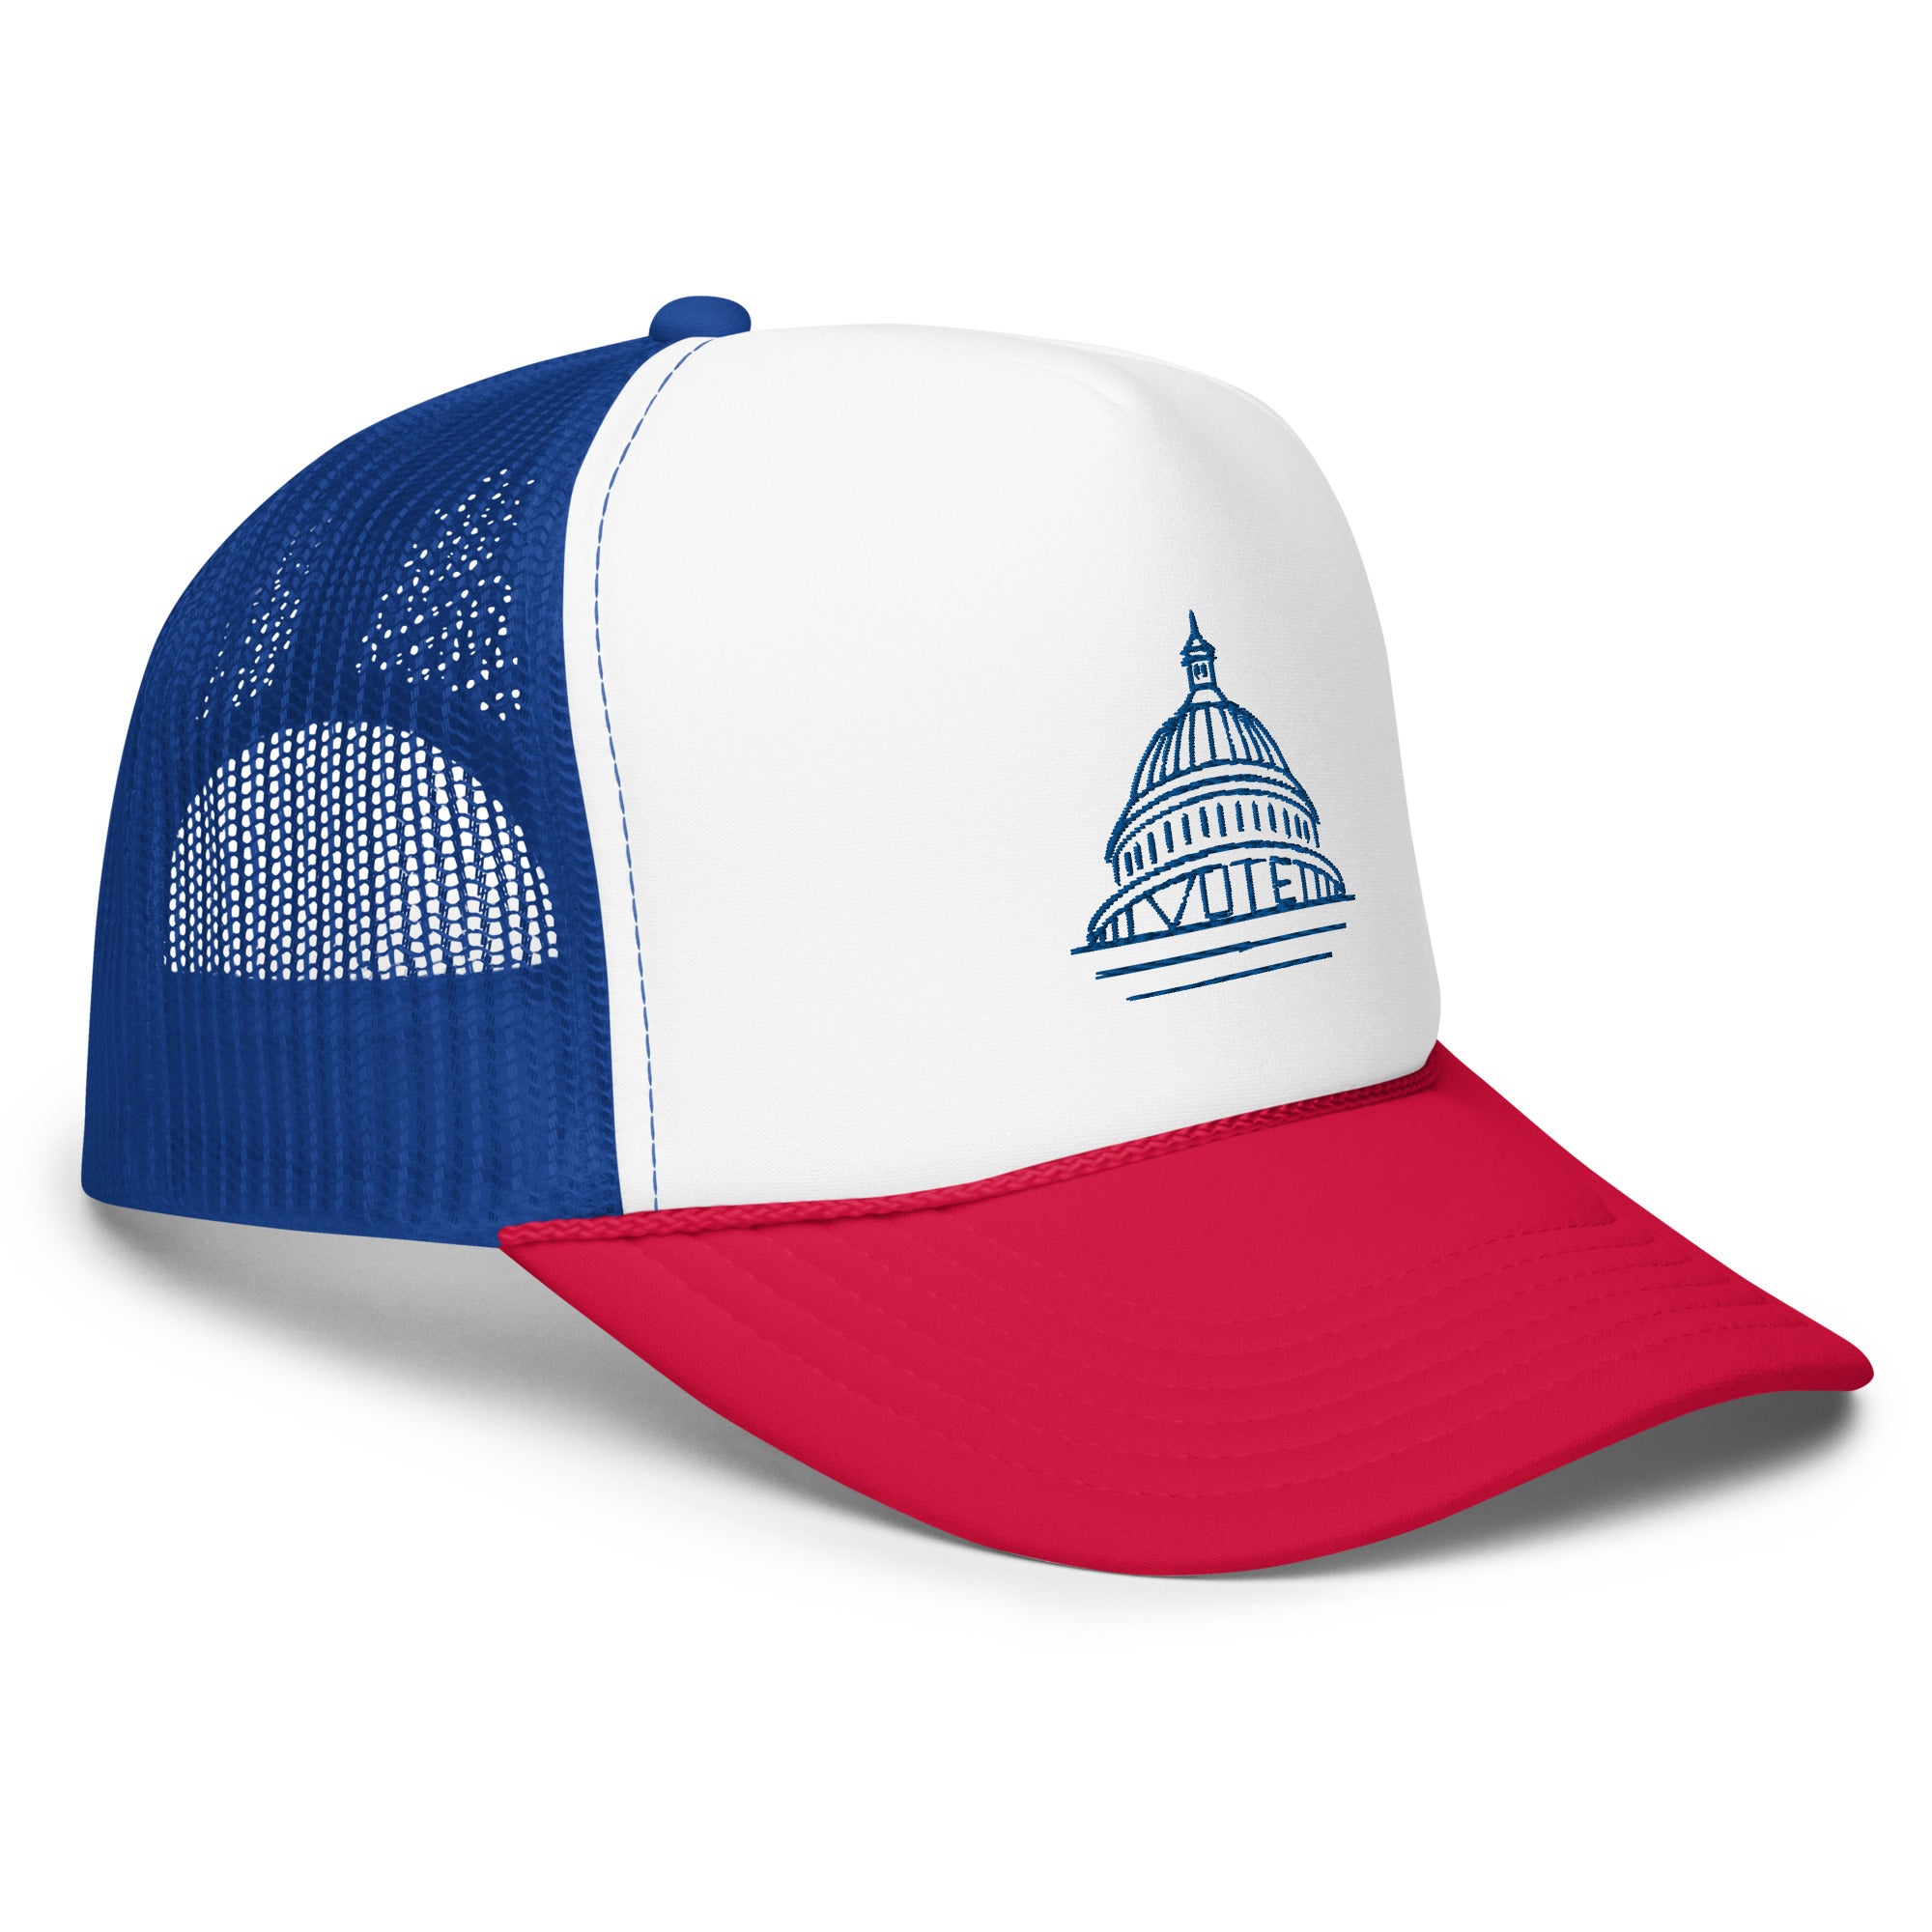 Vote Democracy Trucker hat